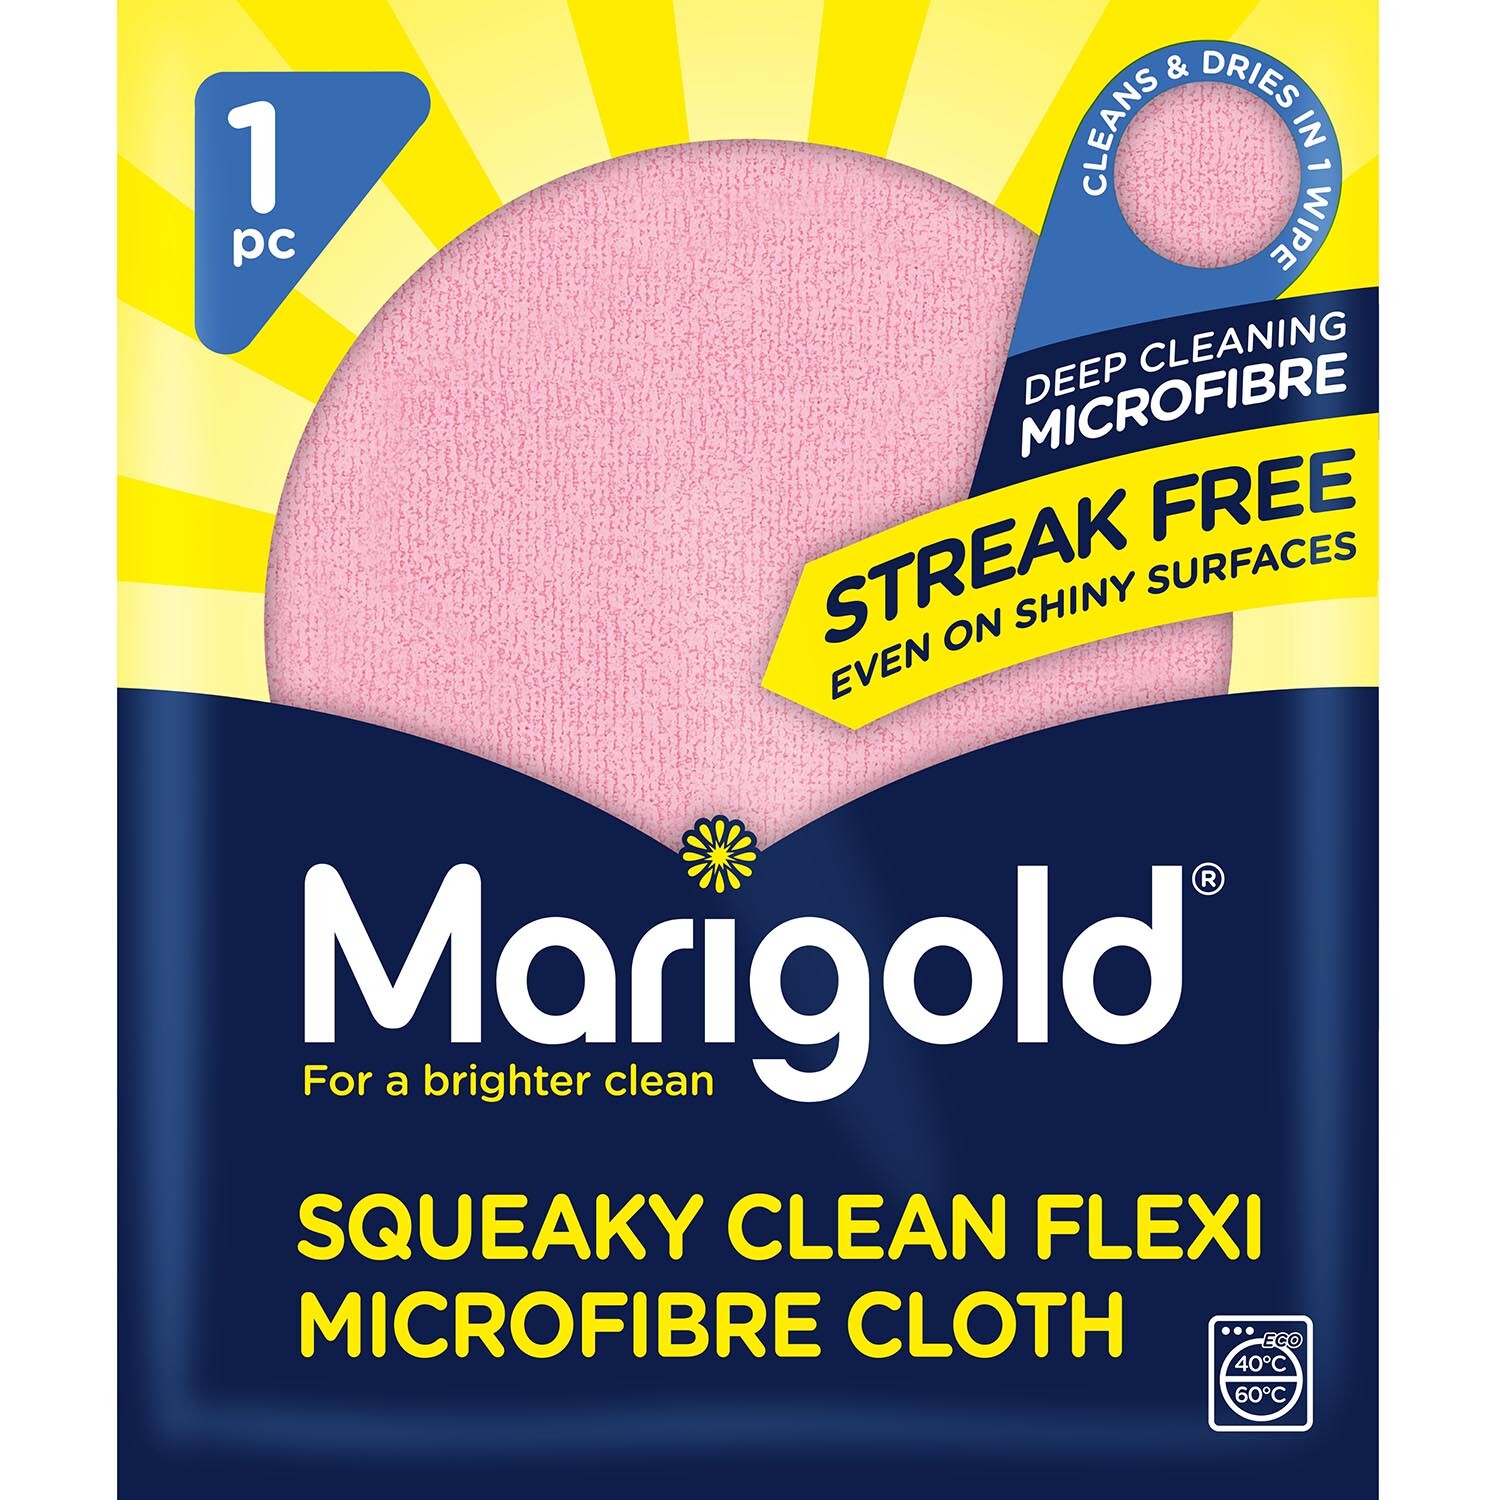 Marigold Squeaky Clean Flexi Microfibre Cloth Image 1